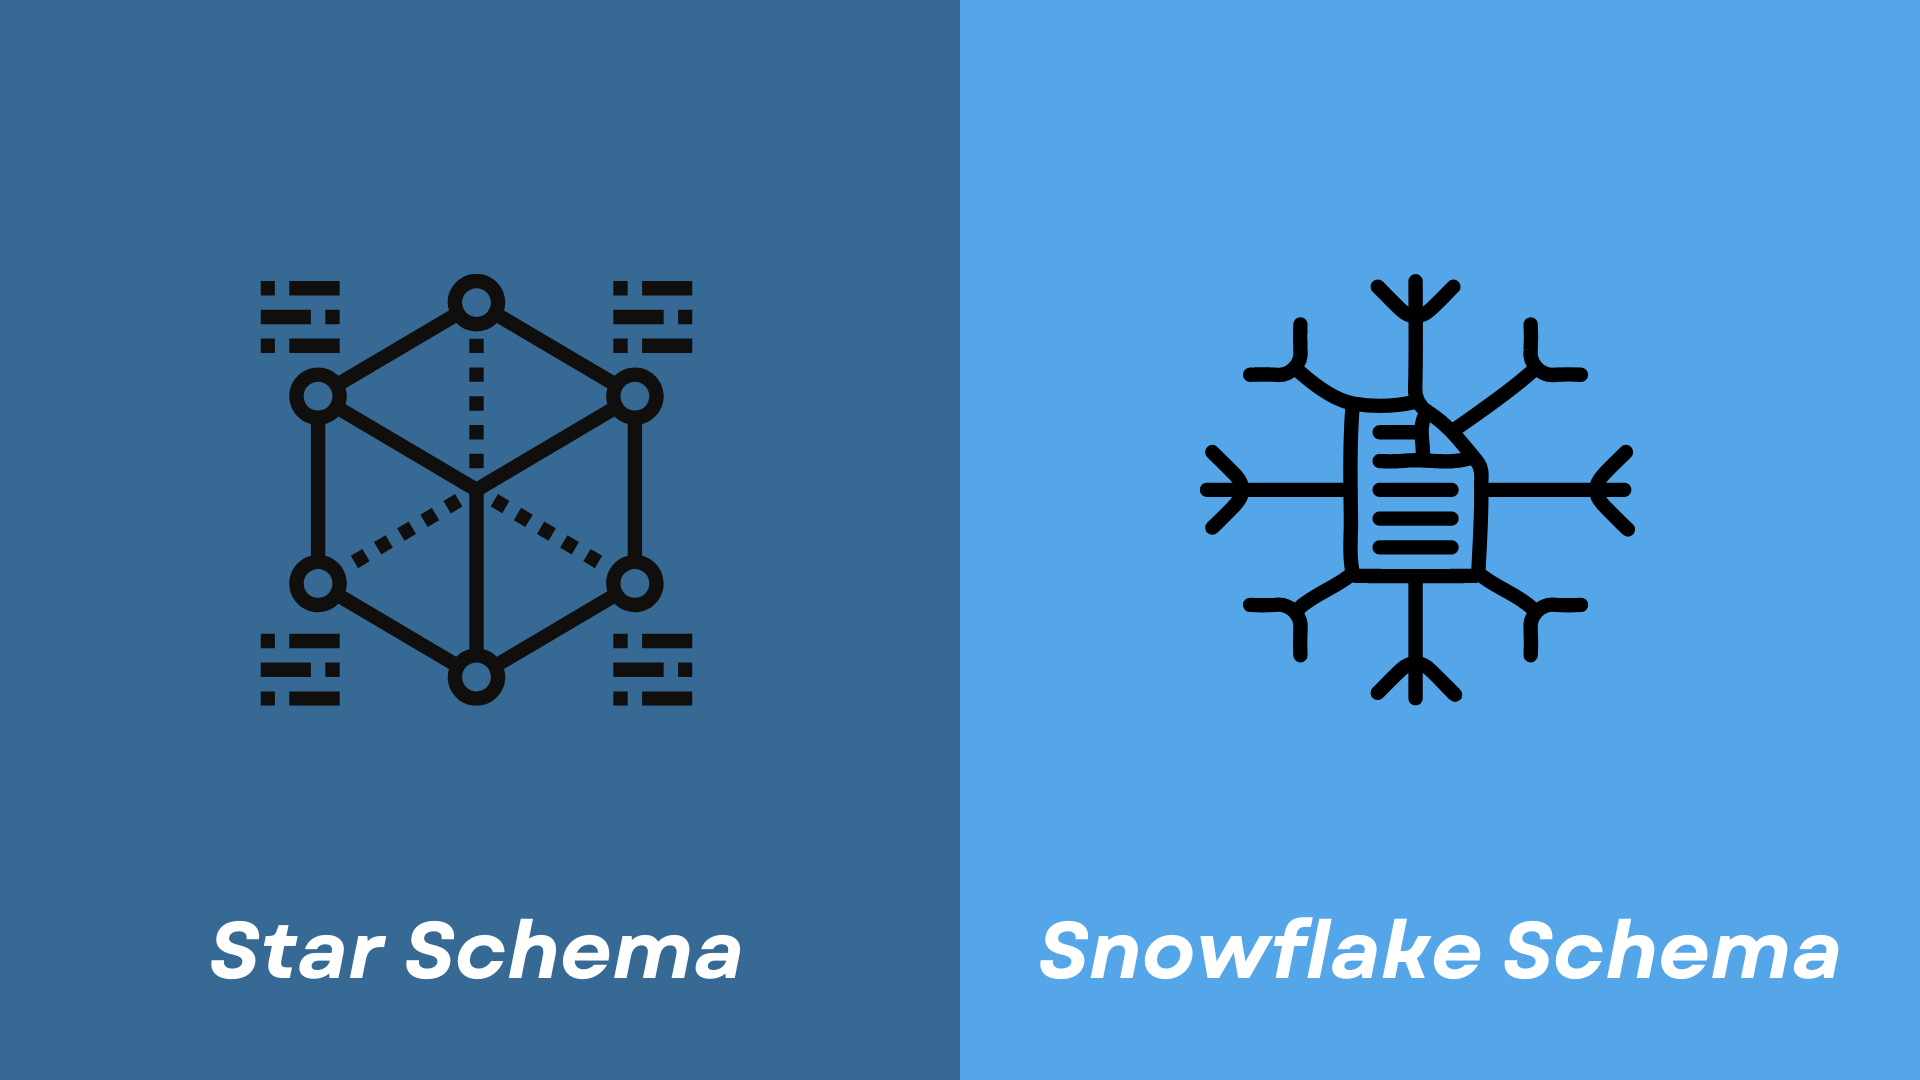 Star Schema and Snowflake Schema in Data Warehousing